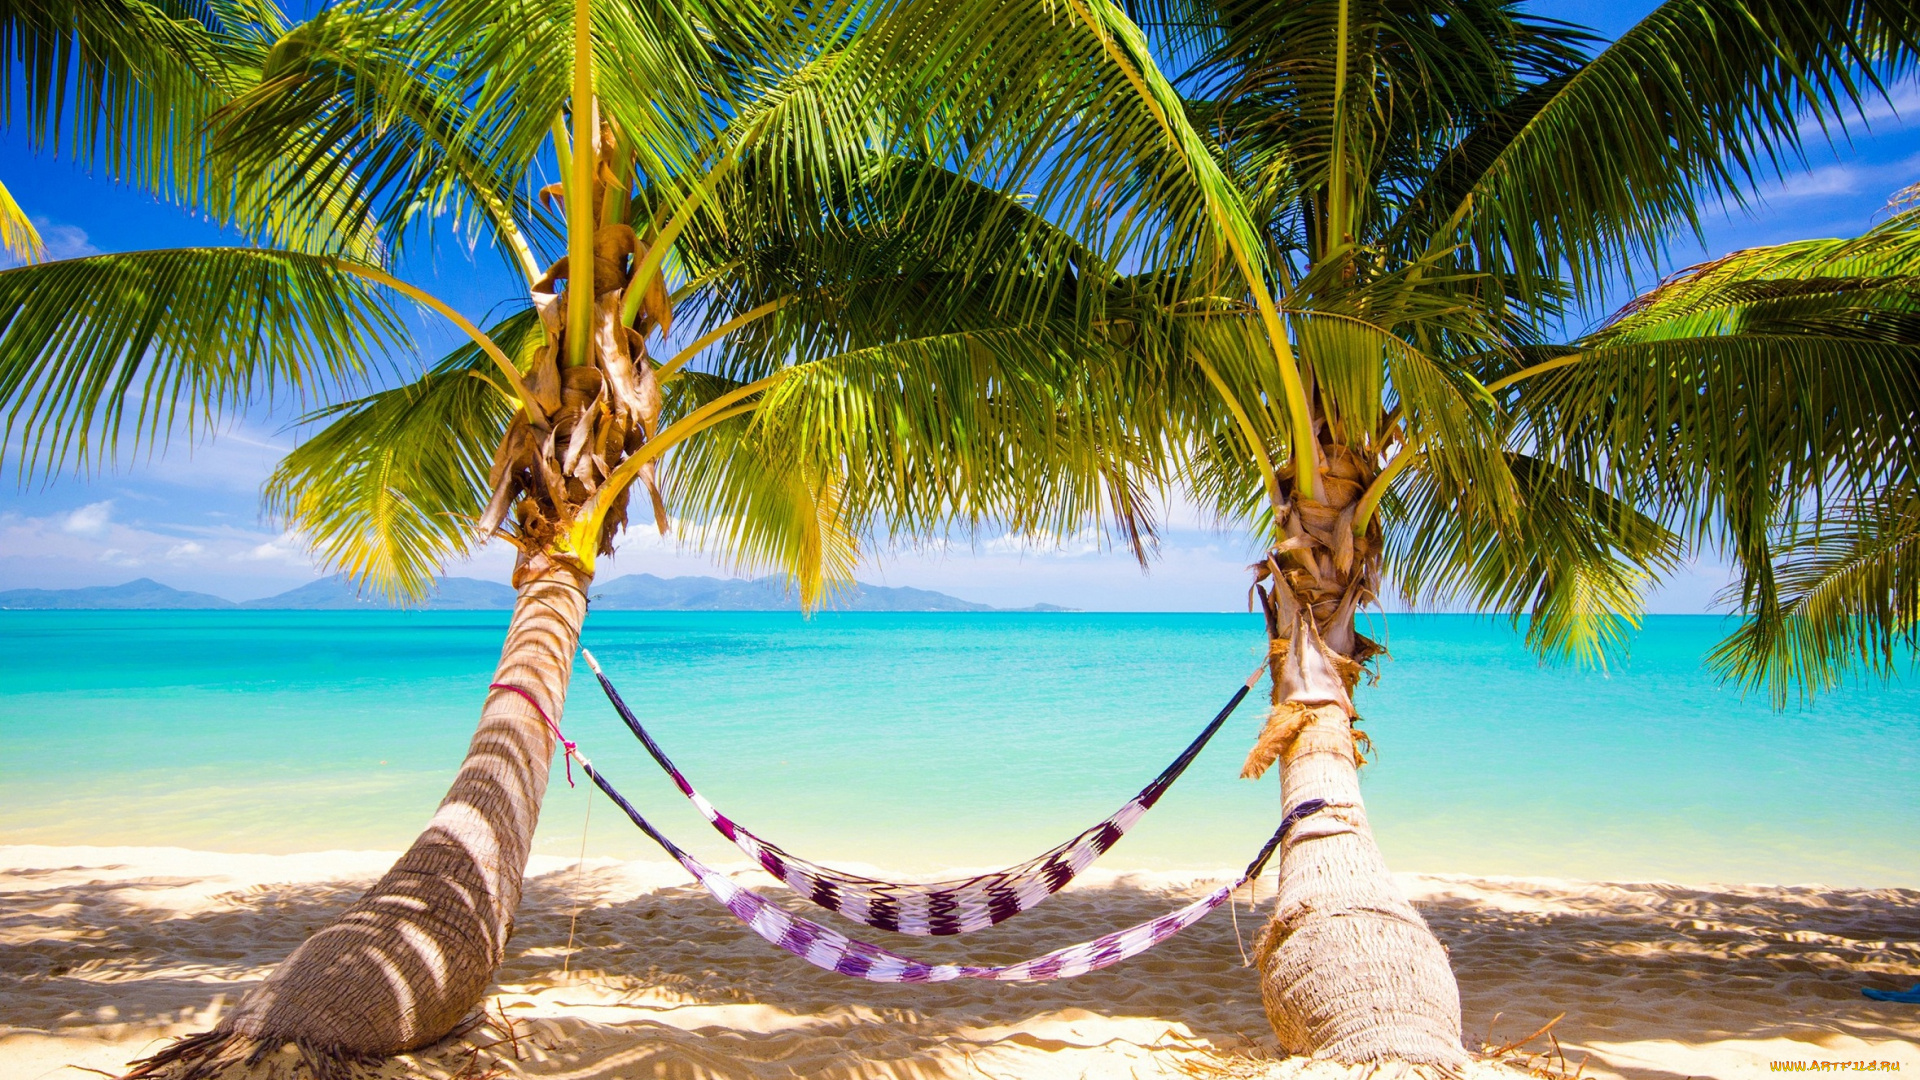 природа, тропики, vacation, sunshine, summer, ocean, sea, palms, beach, берег, песок, пальмы, море, пляж, hammock, tropical, paradise